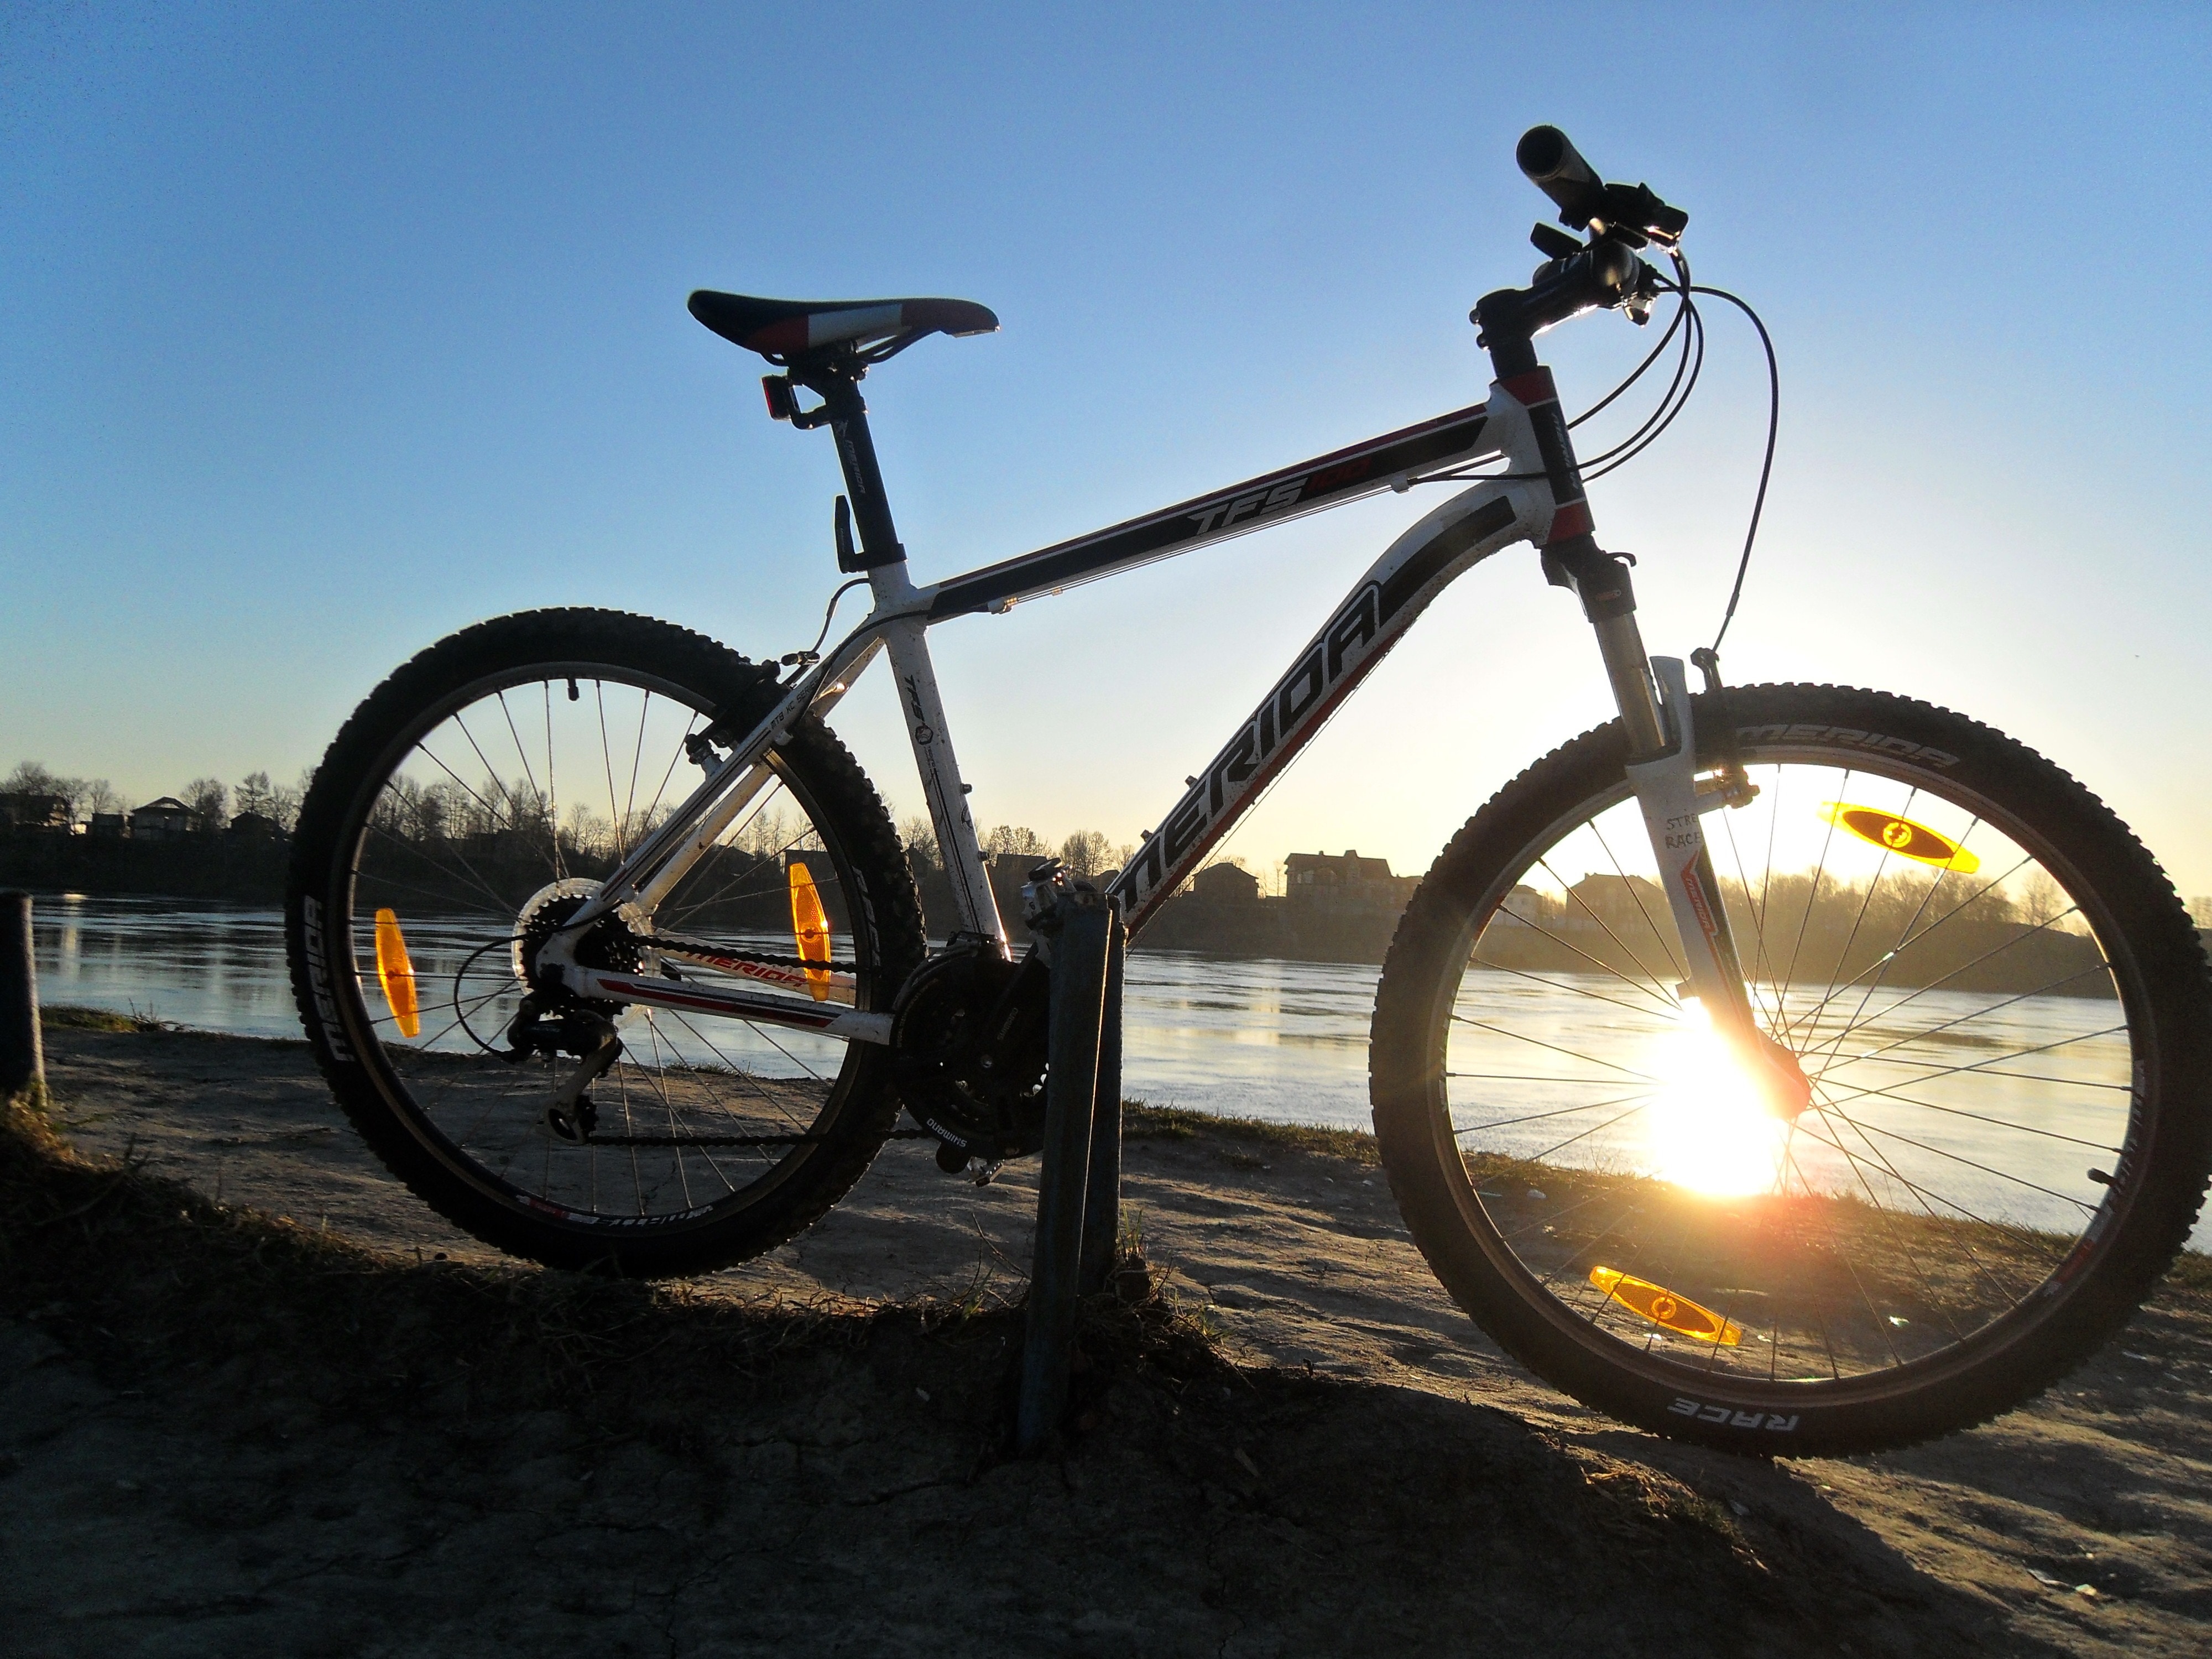 white and black Erida mountain bike beside lake under clear blue sky